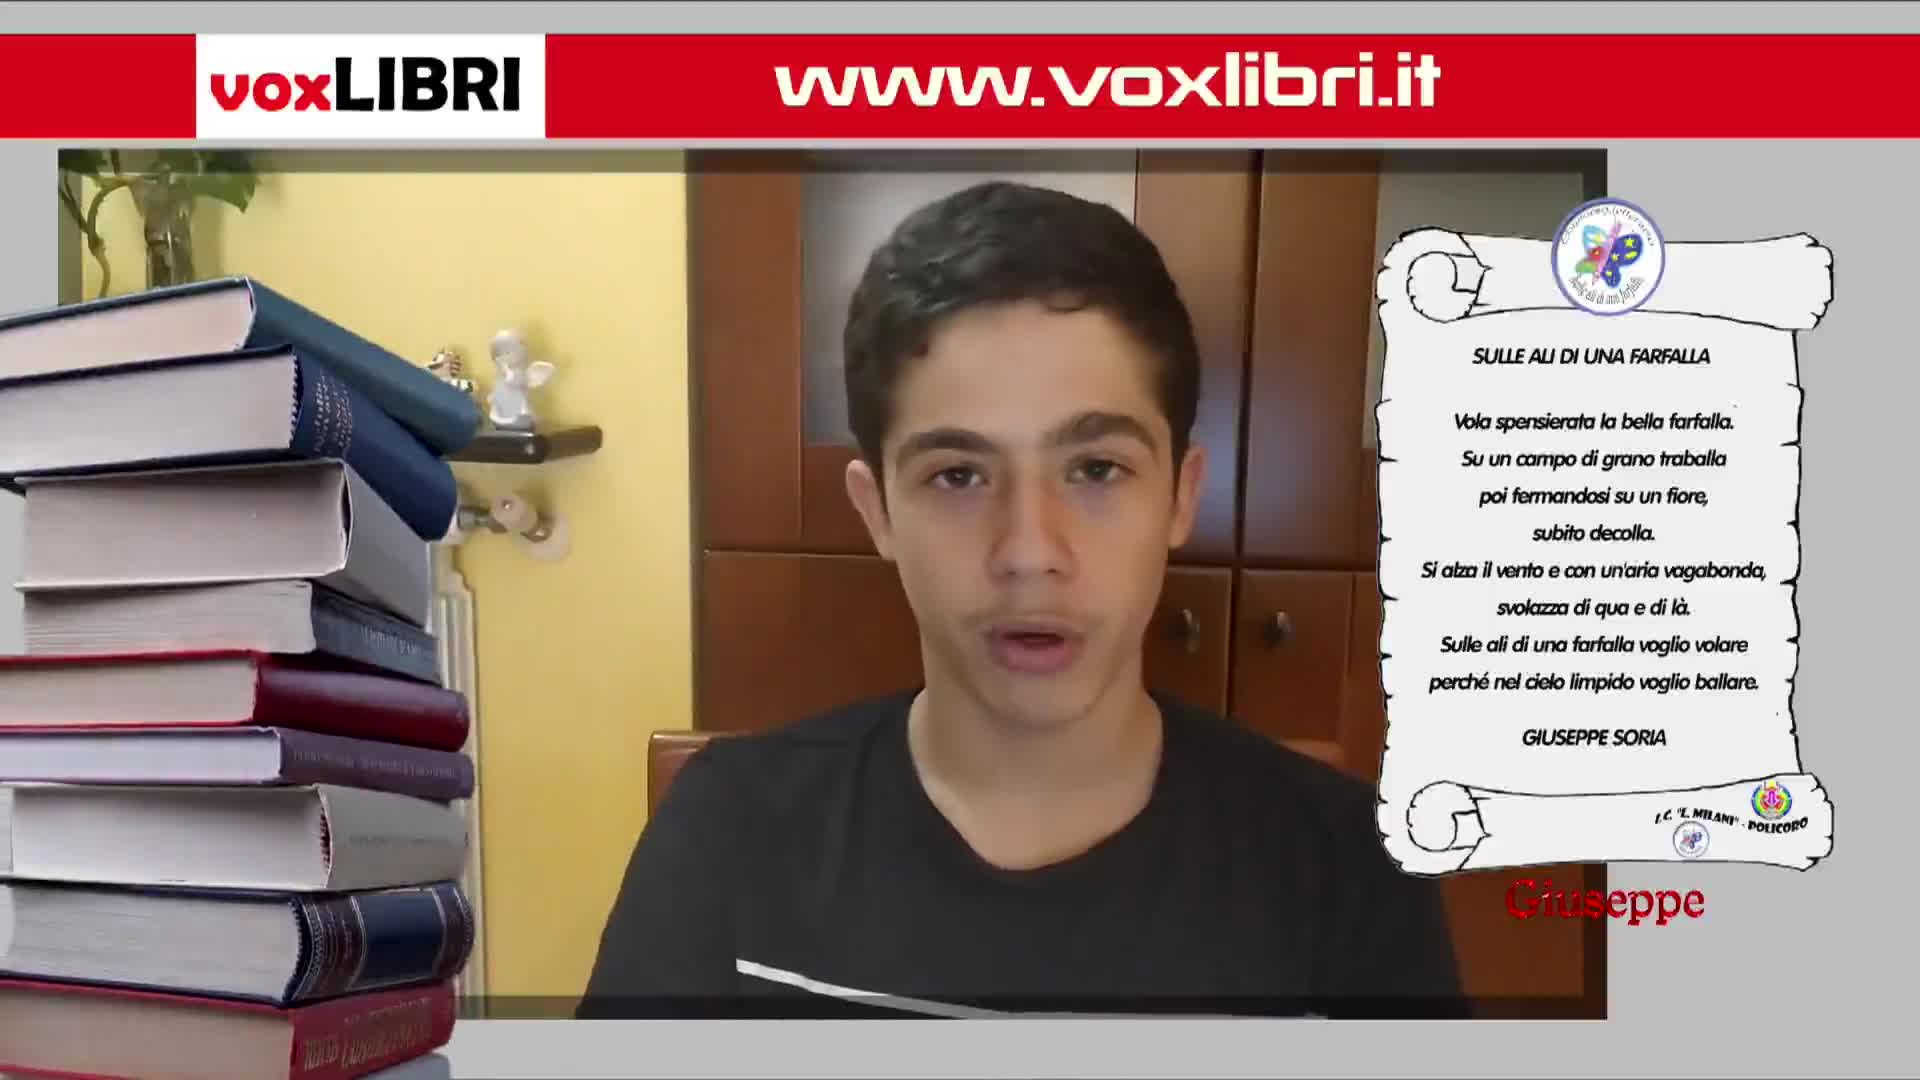 VoxLIBRI - il tuo libro in tv - immagine